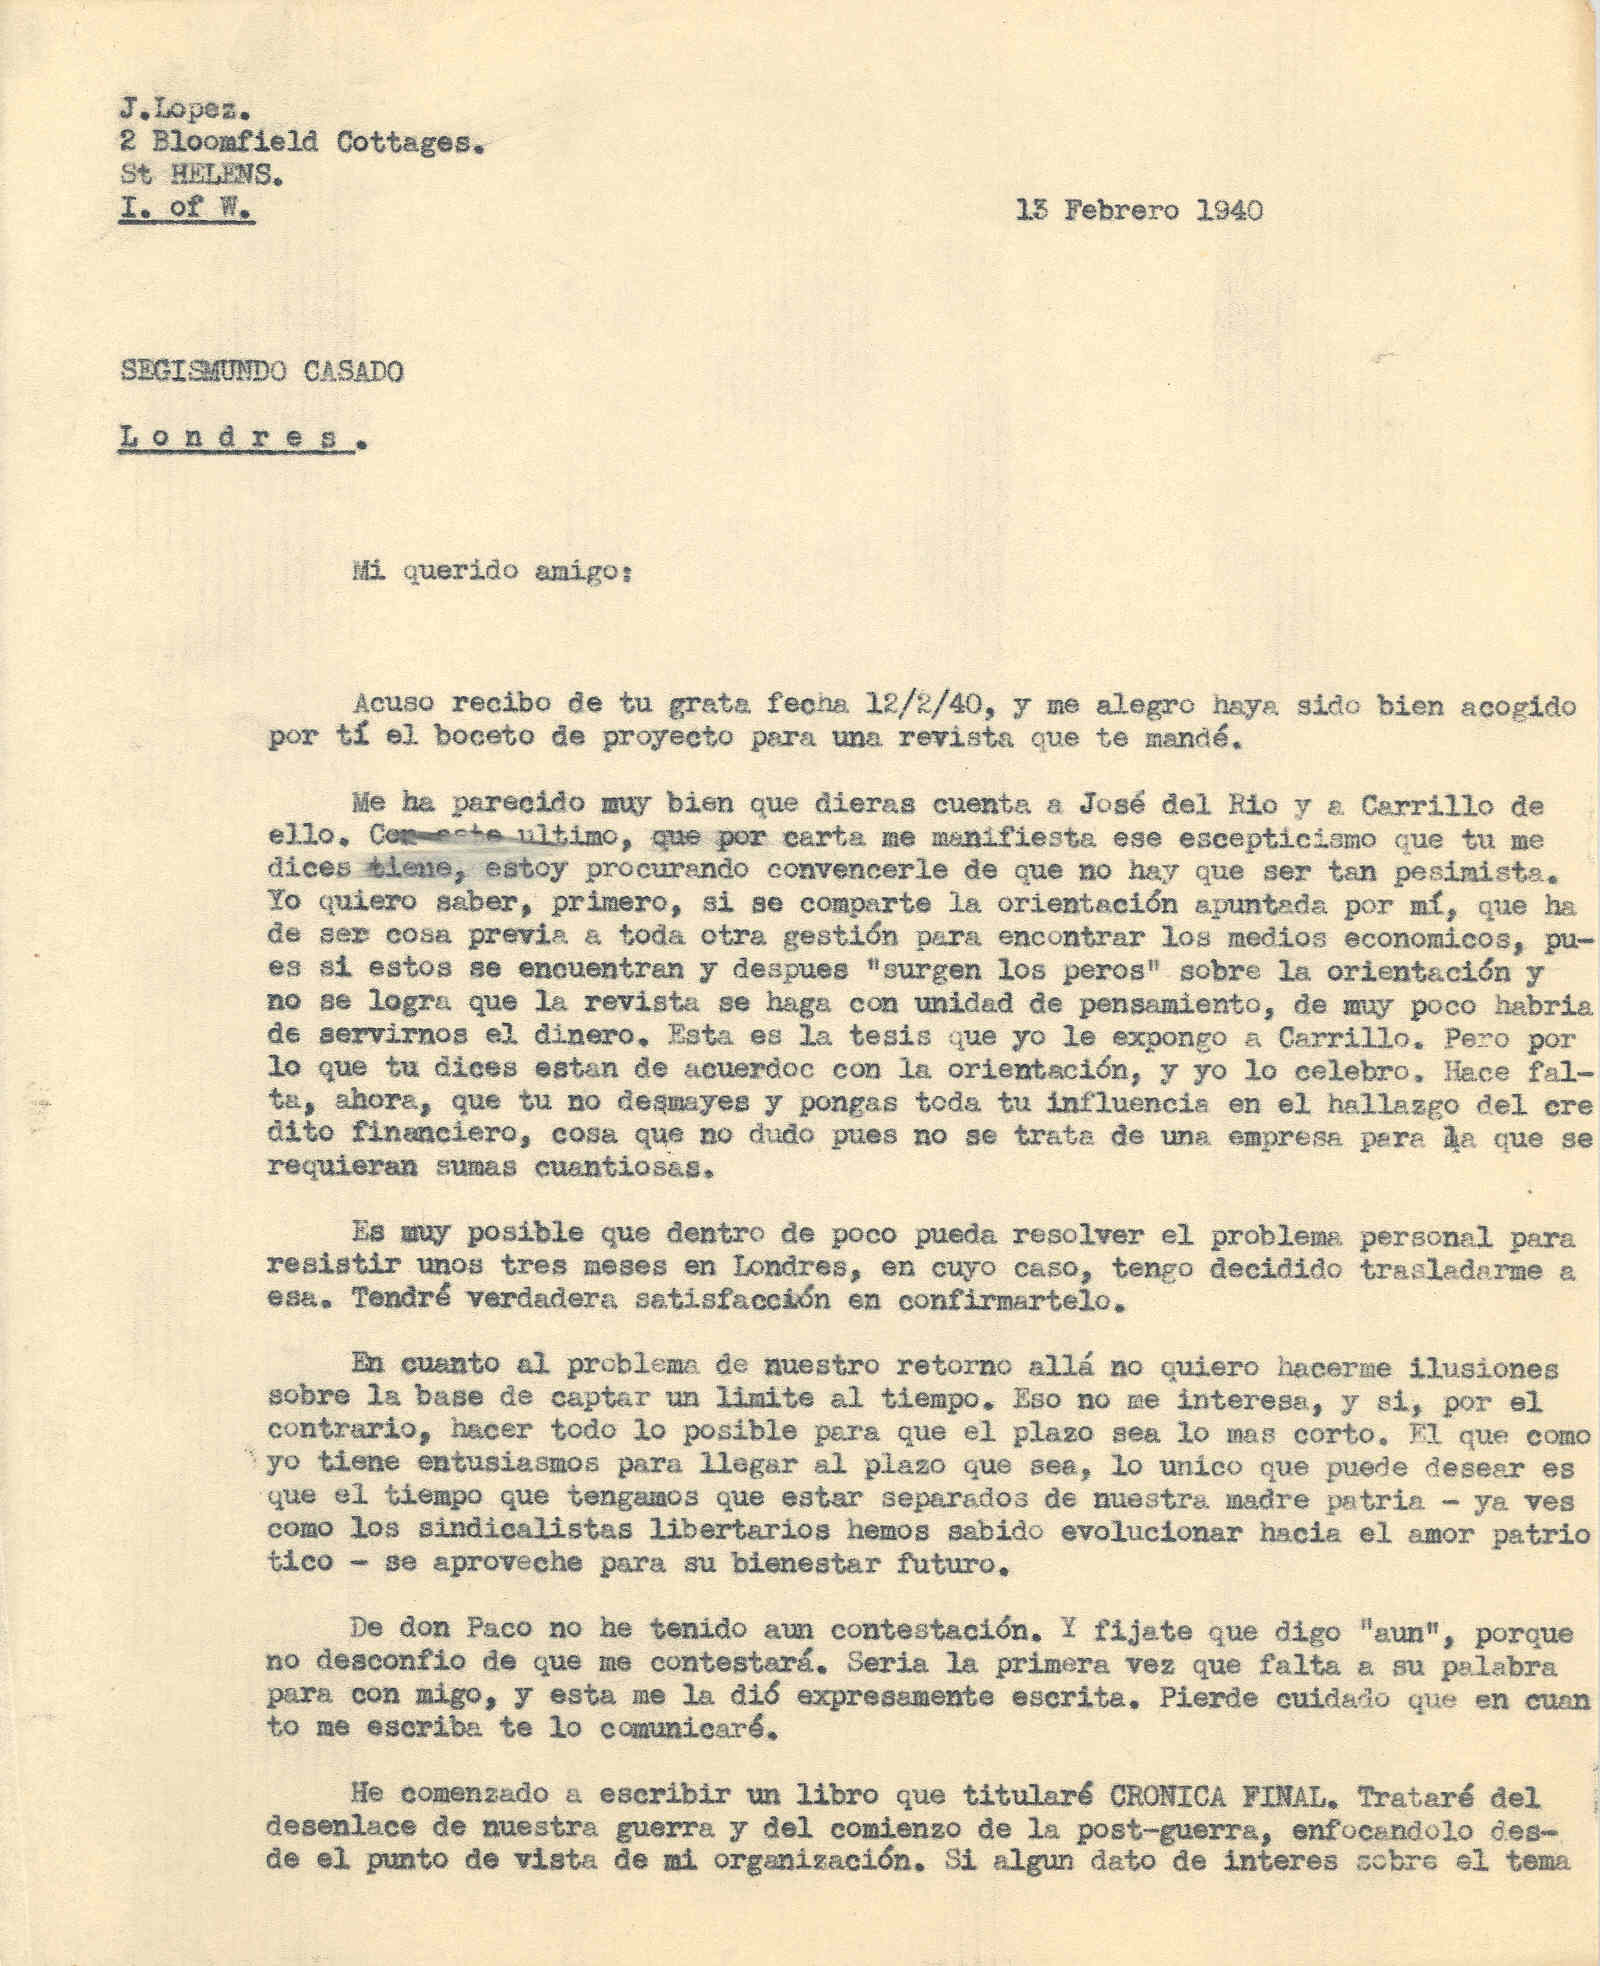 Carta a Segismundo Casado en la que habla sobre creación de una revista y la colaboración de Carrillo y José del Río; y de la dificultad de volver a España en un corto plazo.